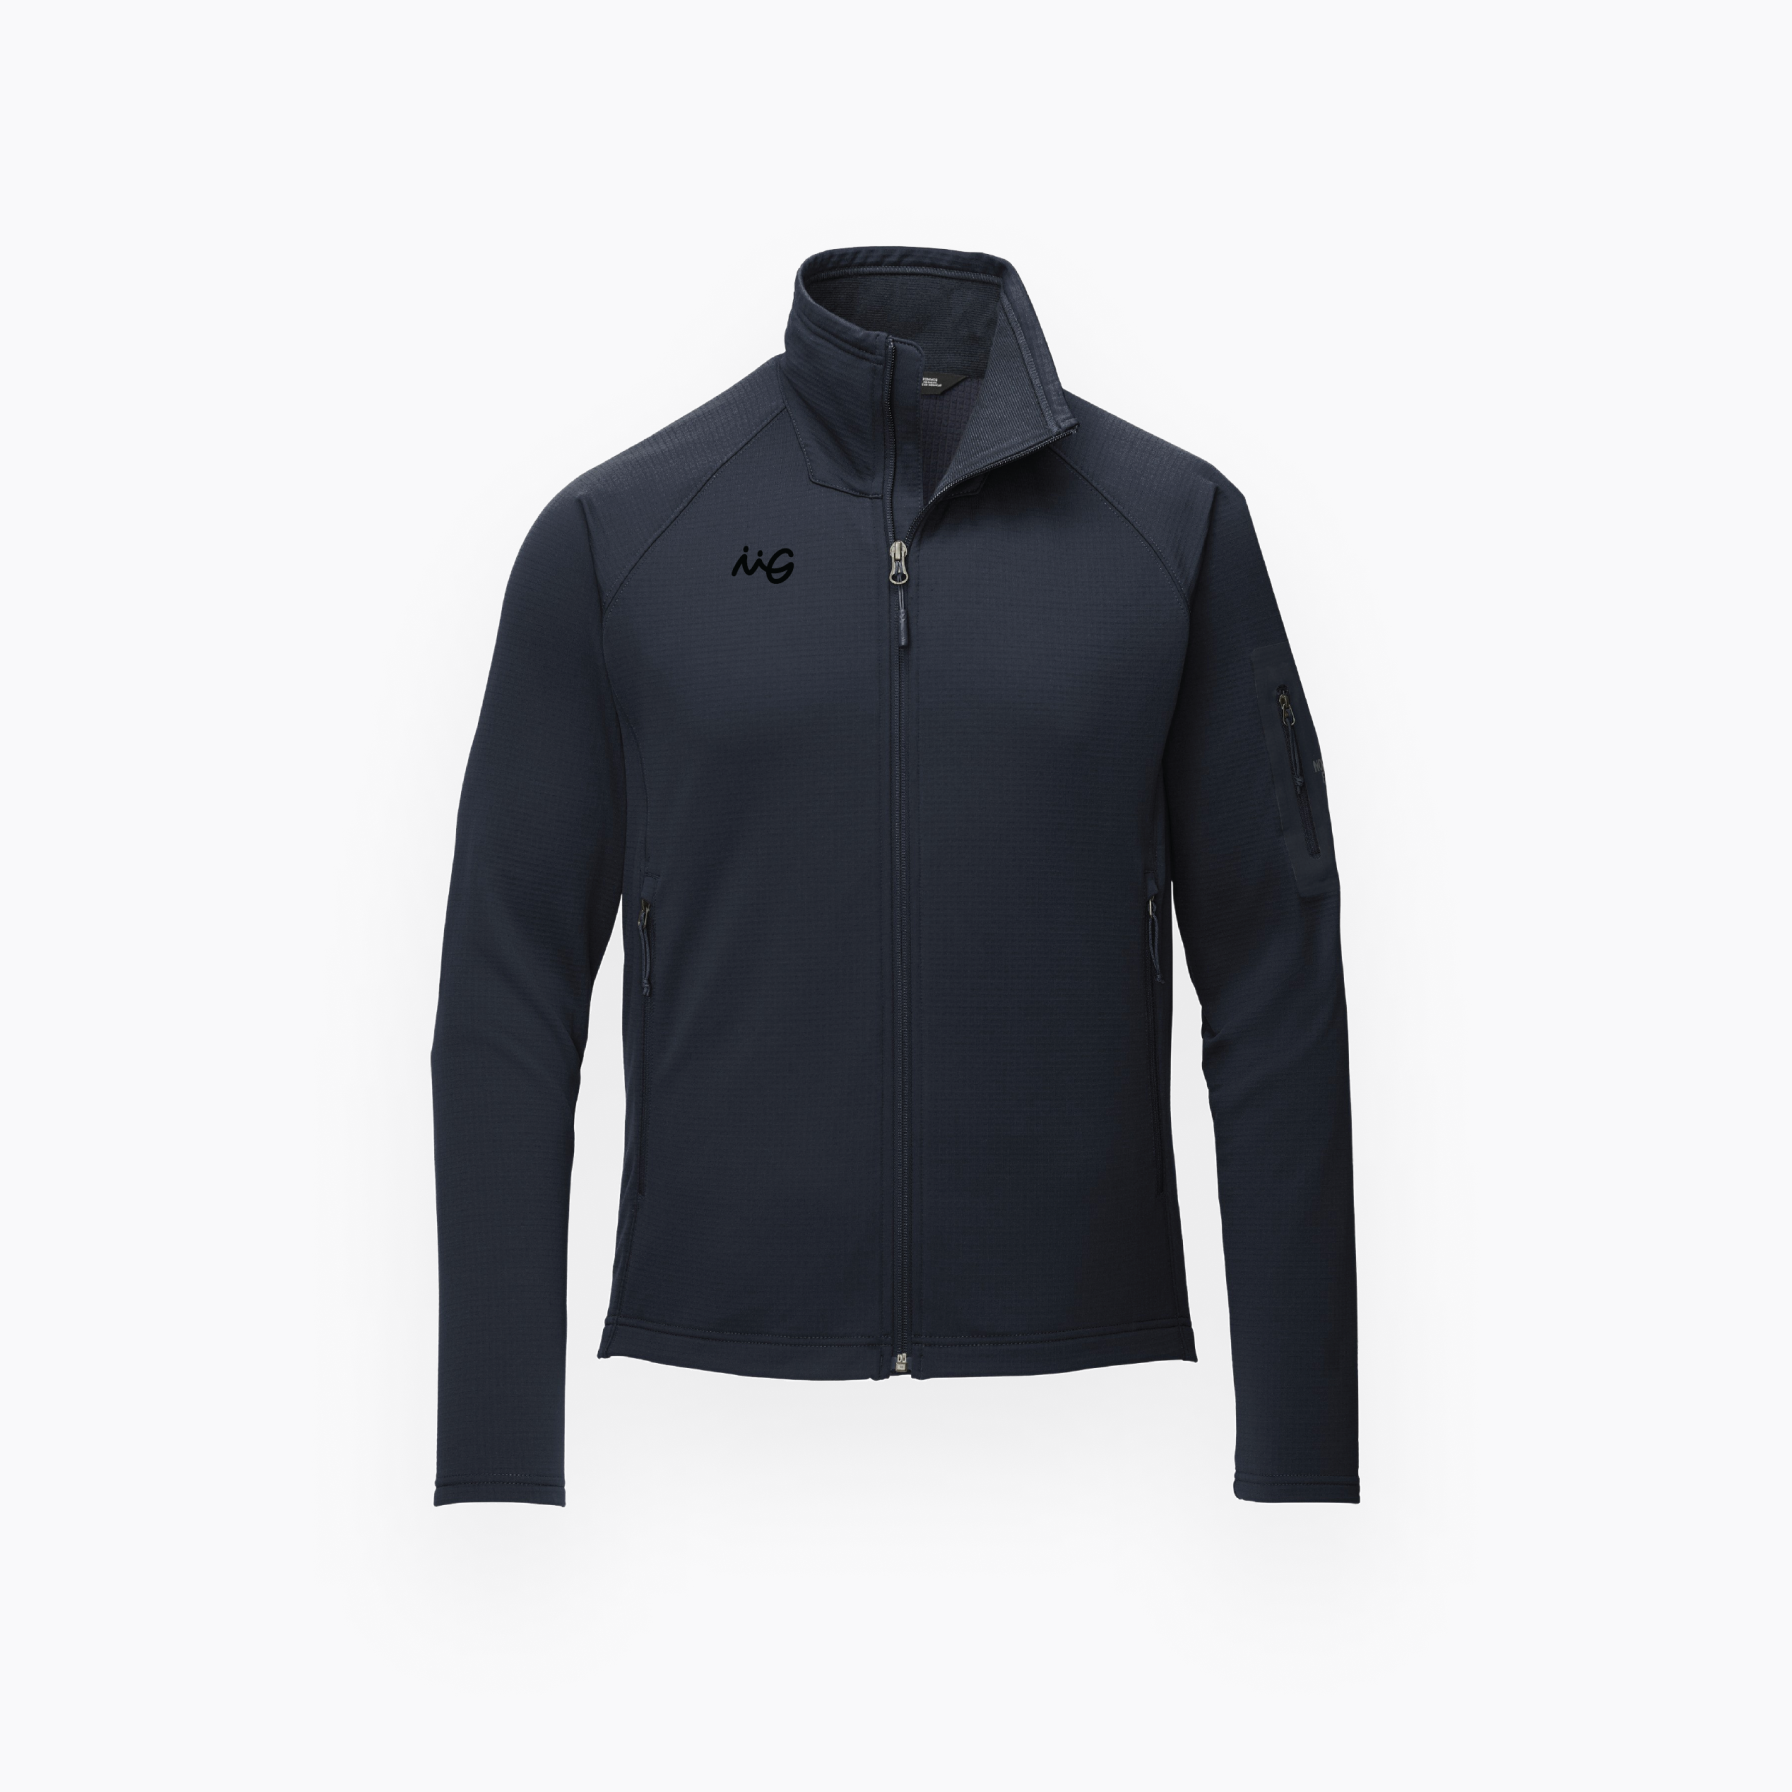 The North Face® Men's Mountain Fleece Jacket